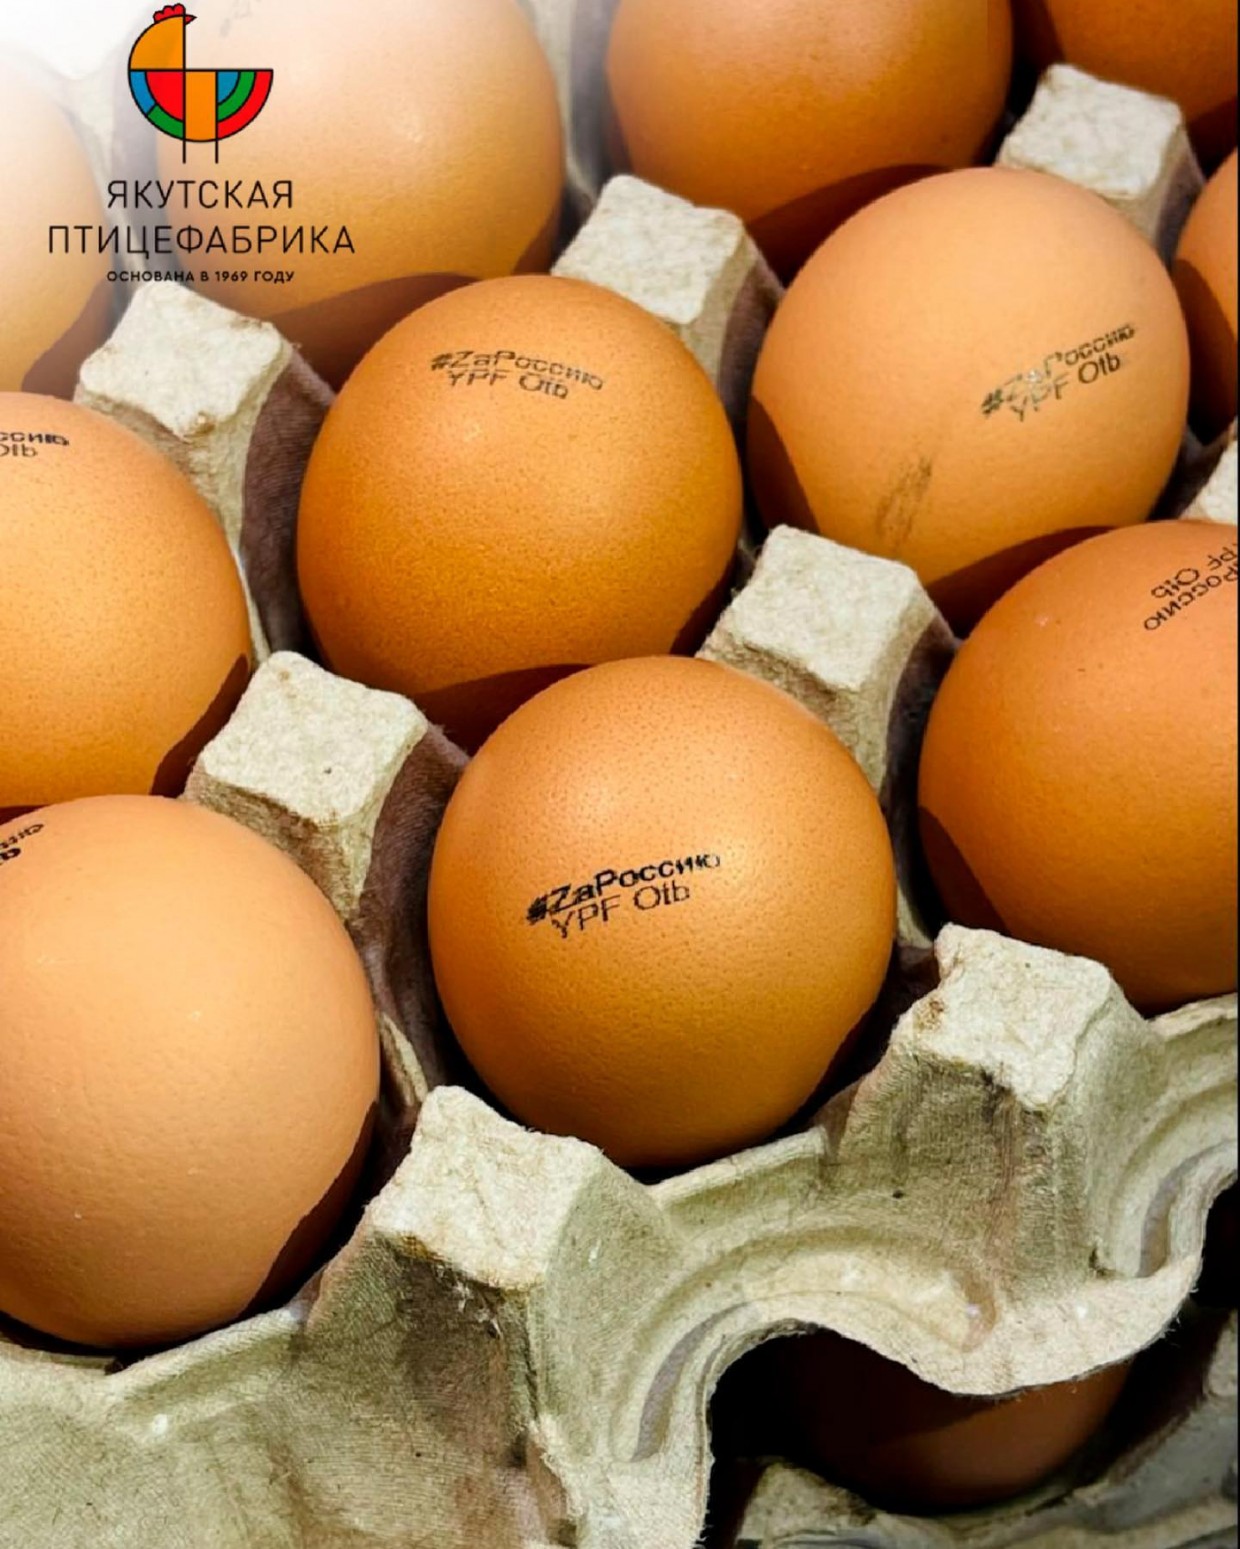 Якутская птицефабрика выпустила яйца "ZaРоссию"